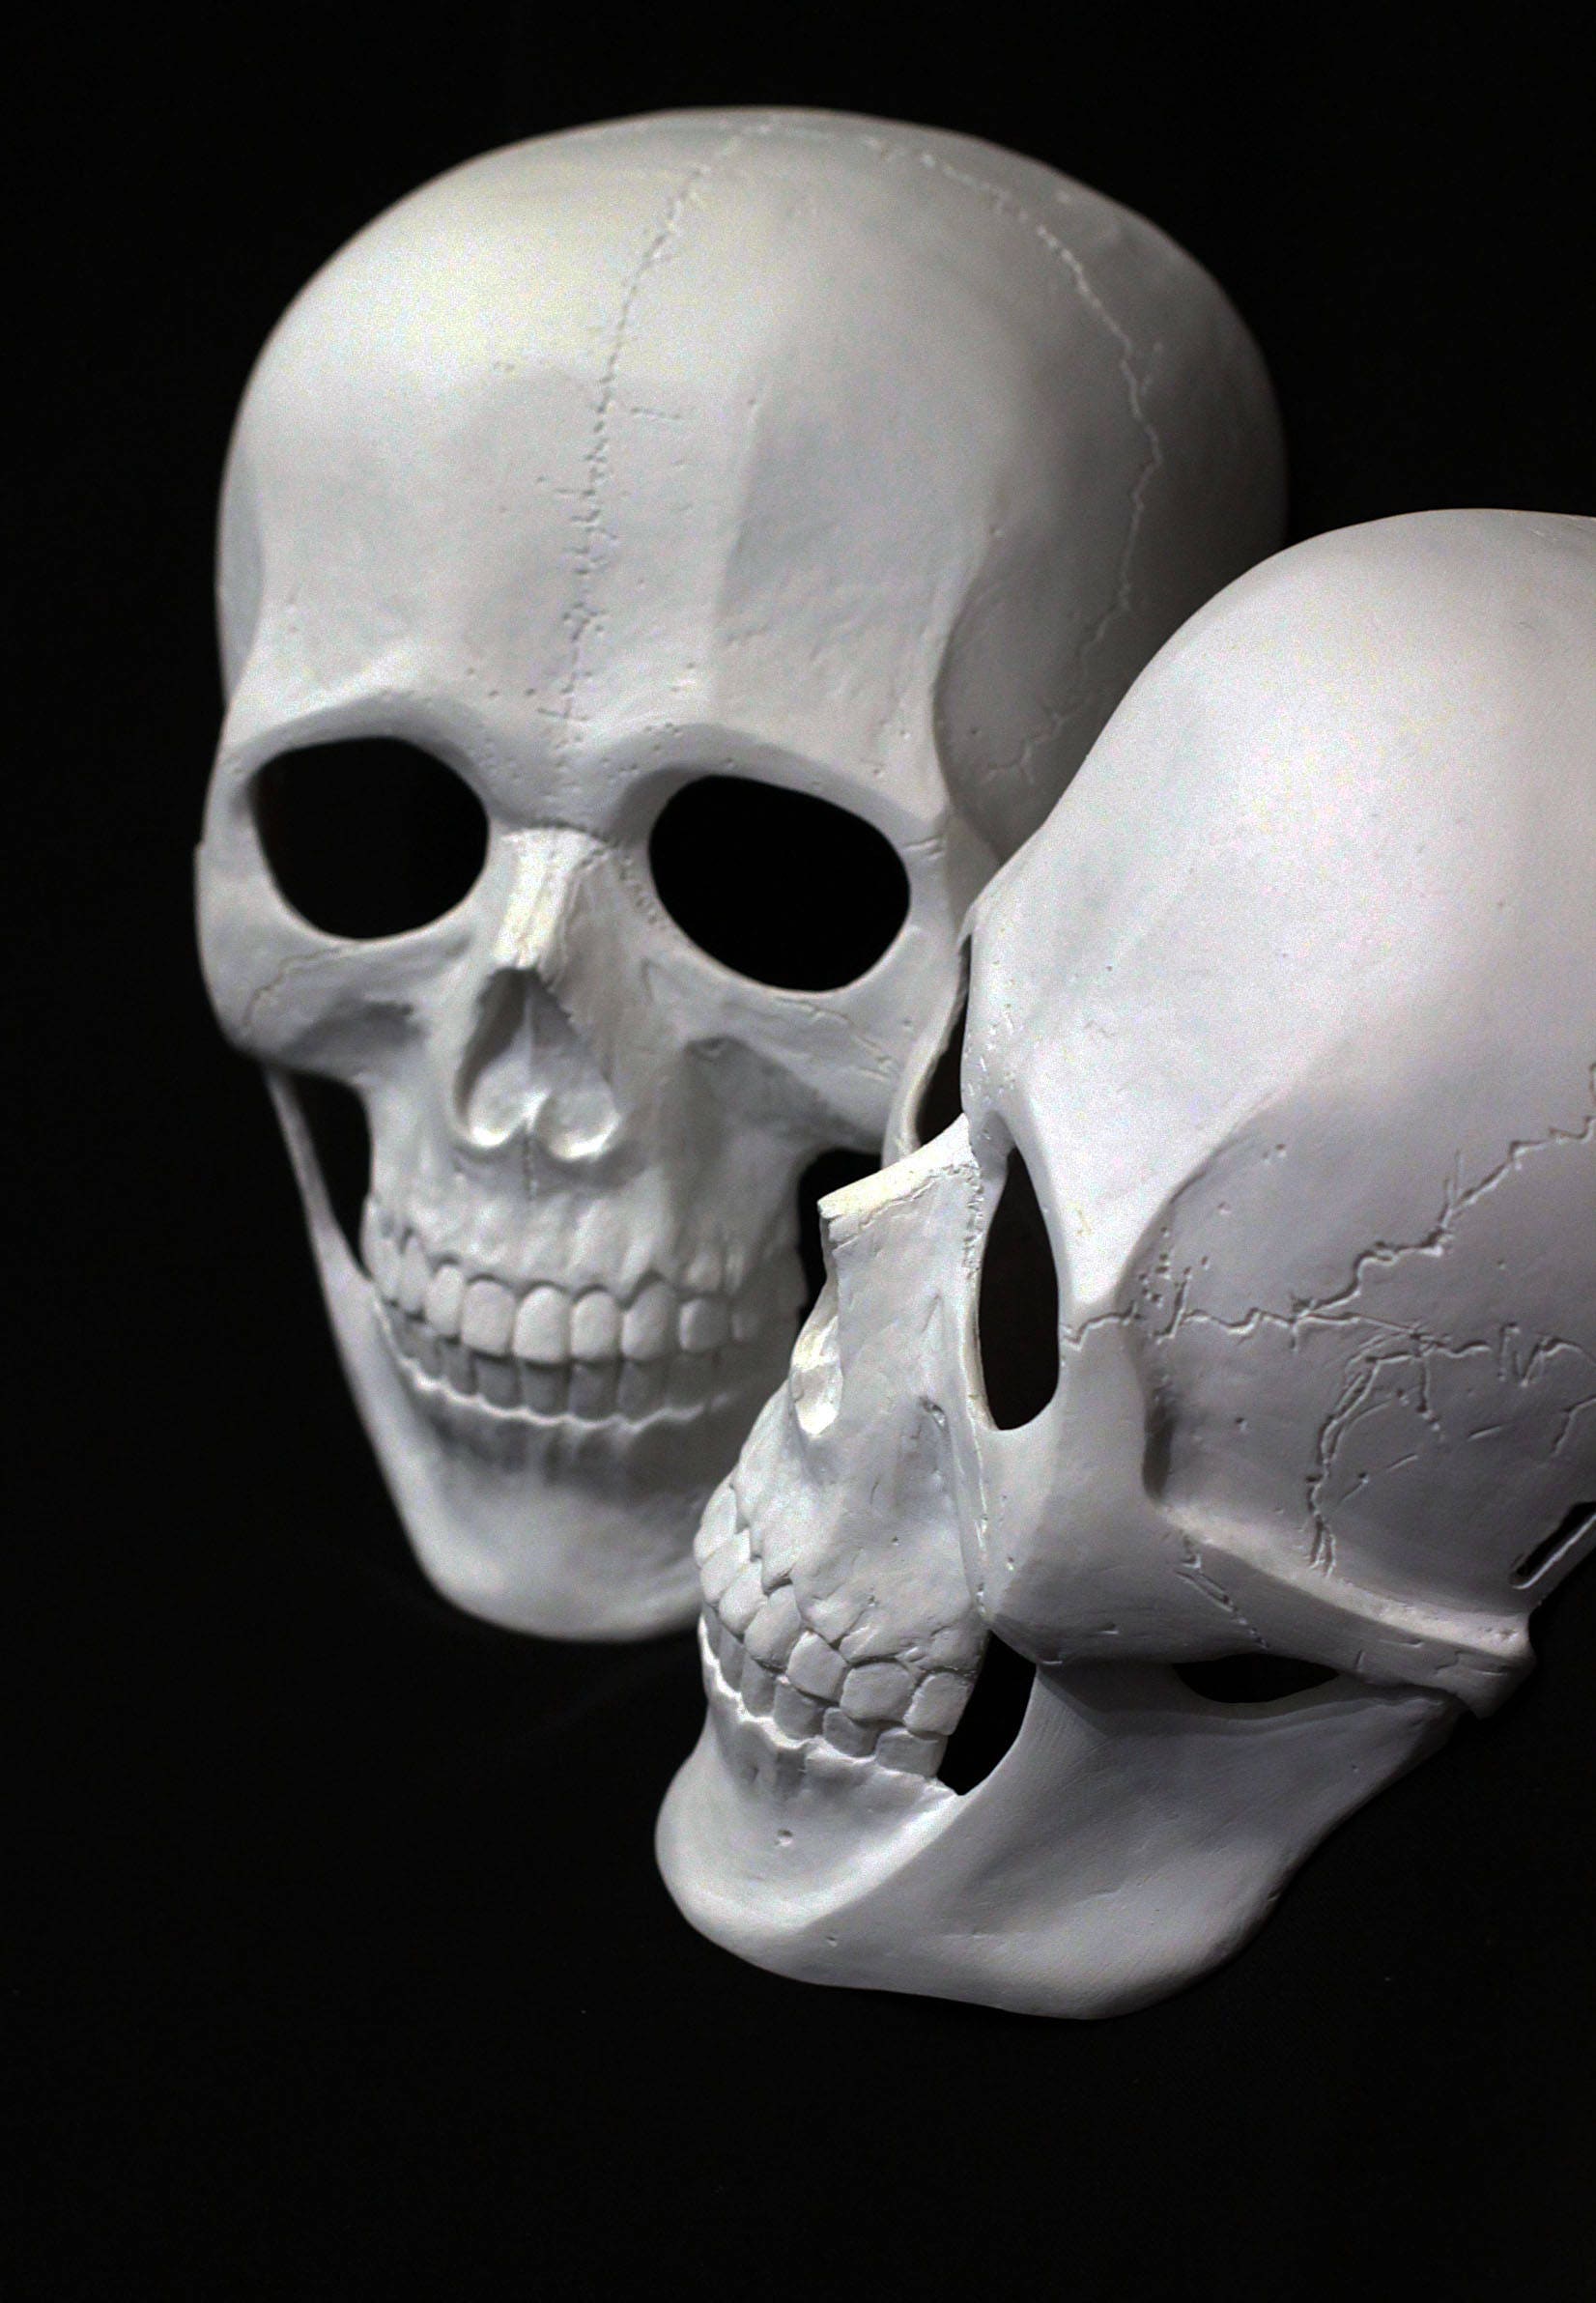  Skull  Mask  Skeleton  Mask  Halloween  Mask  Death Mask  Etsy